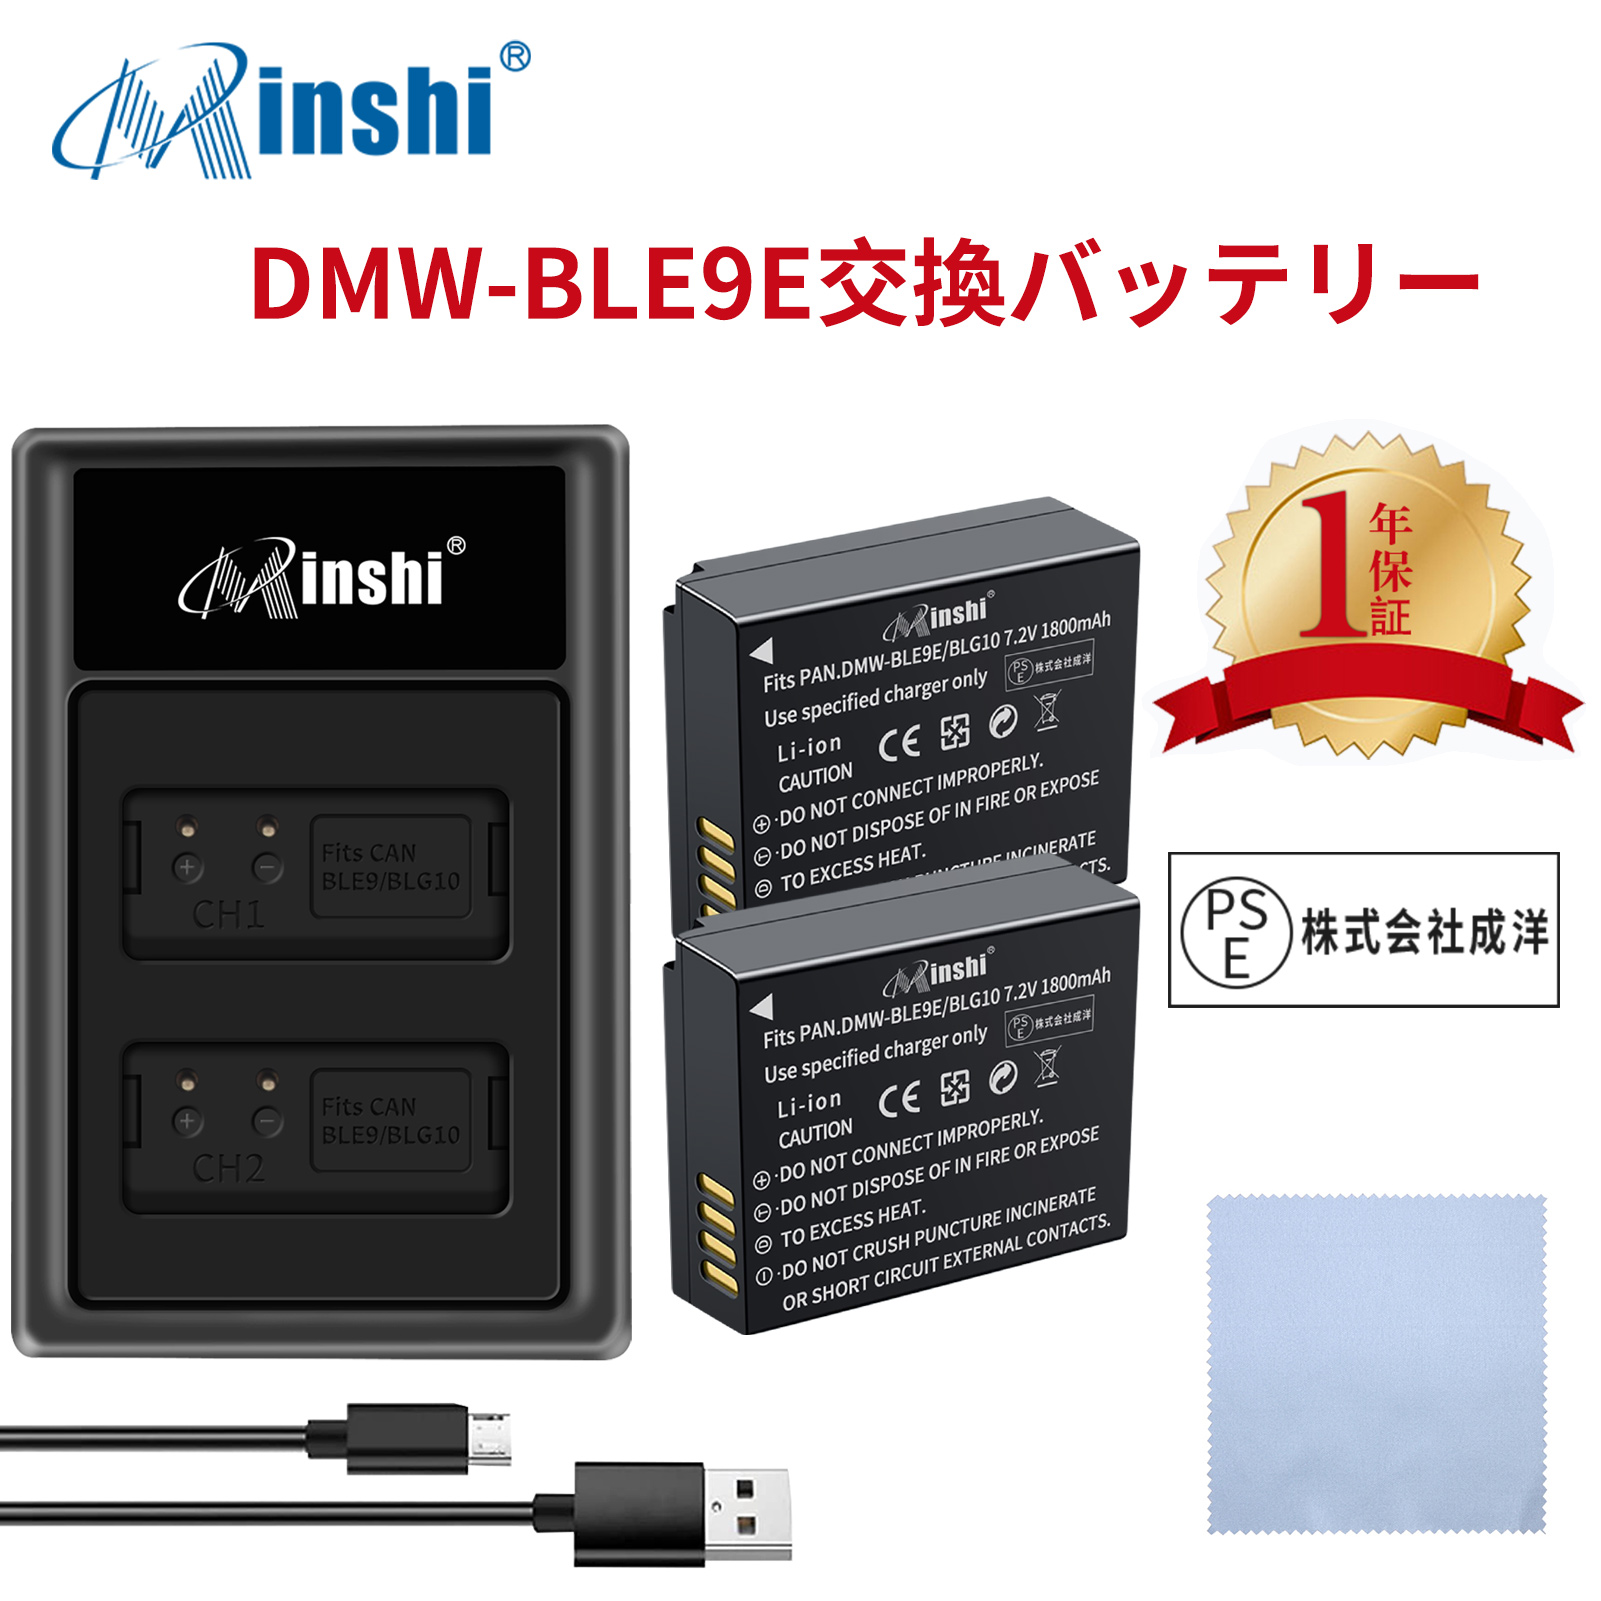 【セット】minshi Panasonic DMC-GX7MK2 DMC-GF3   【1800mAh 7.2V】PSE認定済 高品質 DMW-BLG10 交換用バッテリー【2個】